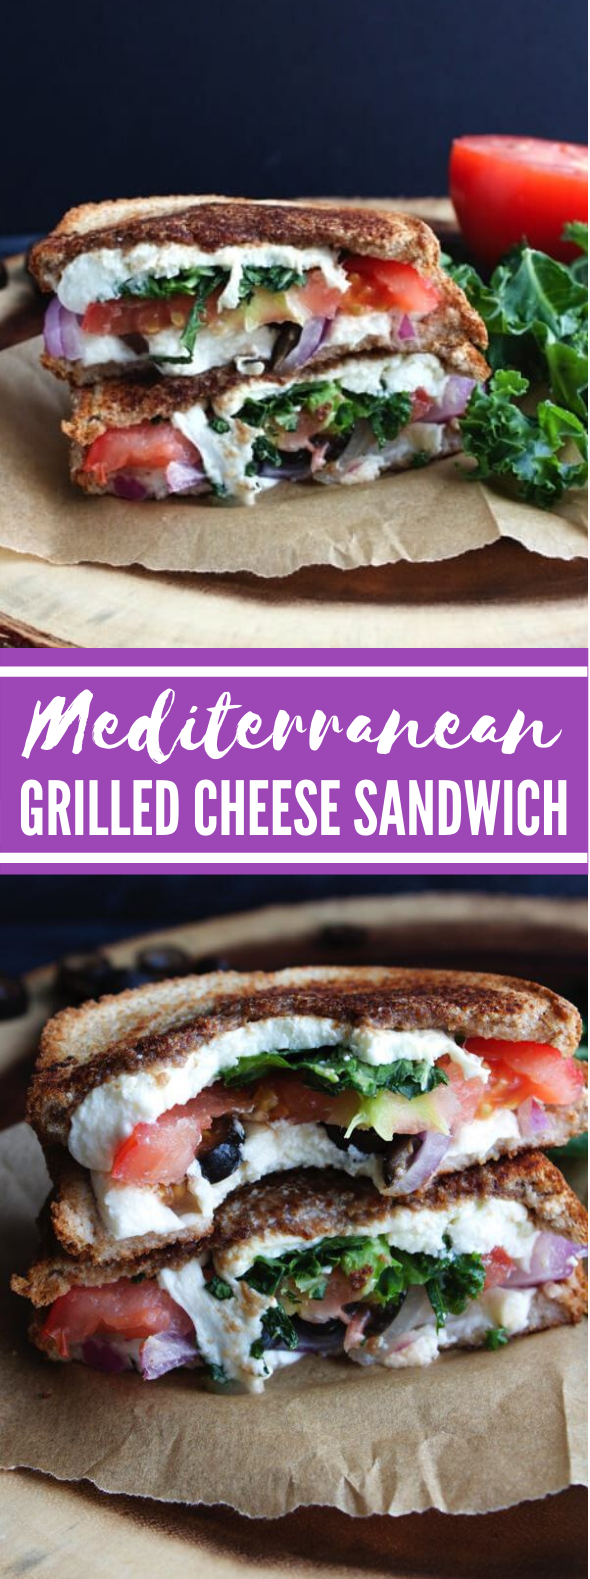 Mediterranean Grilled Cheese Sandwich #lunch #dinner